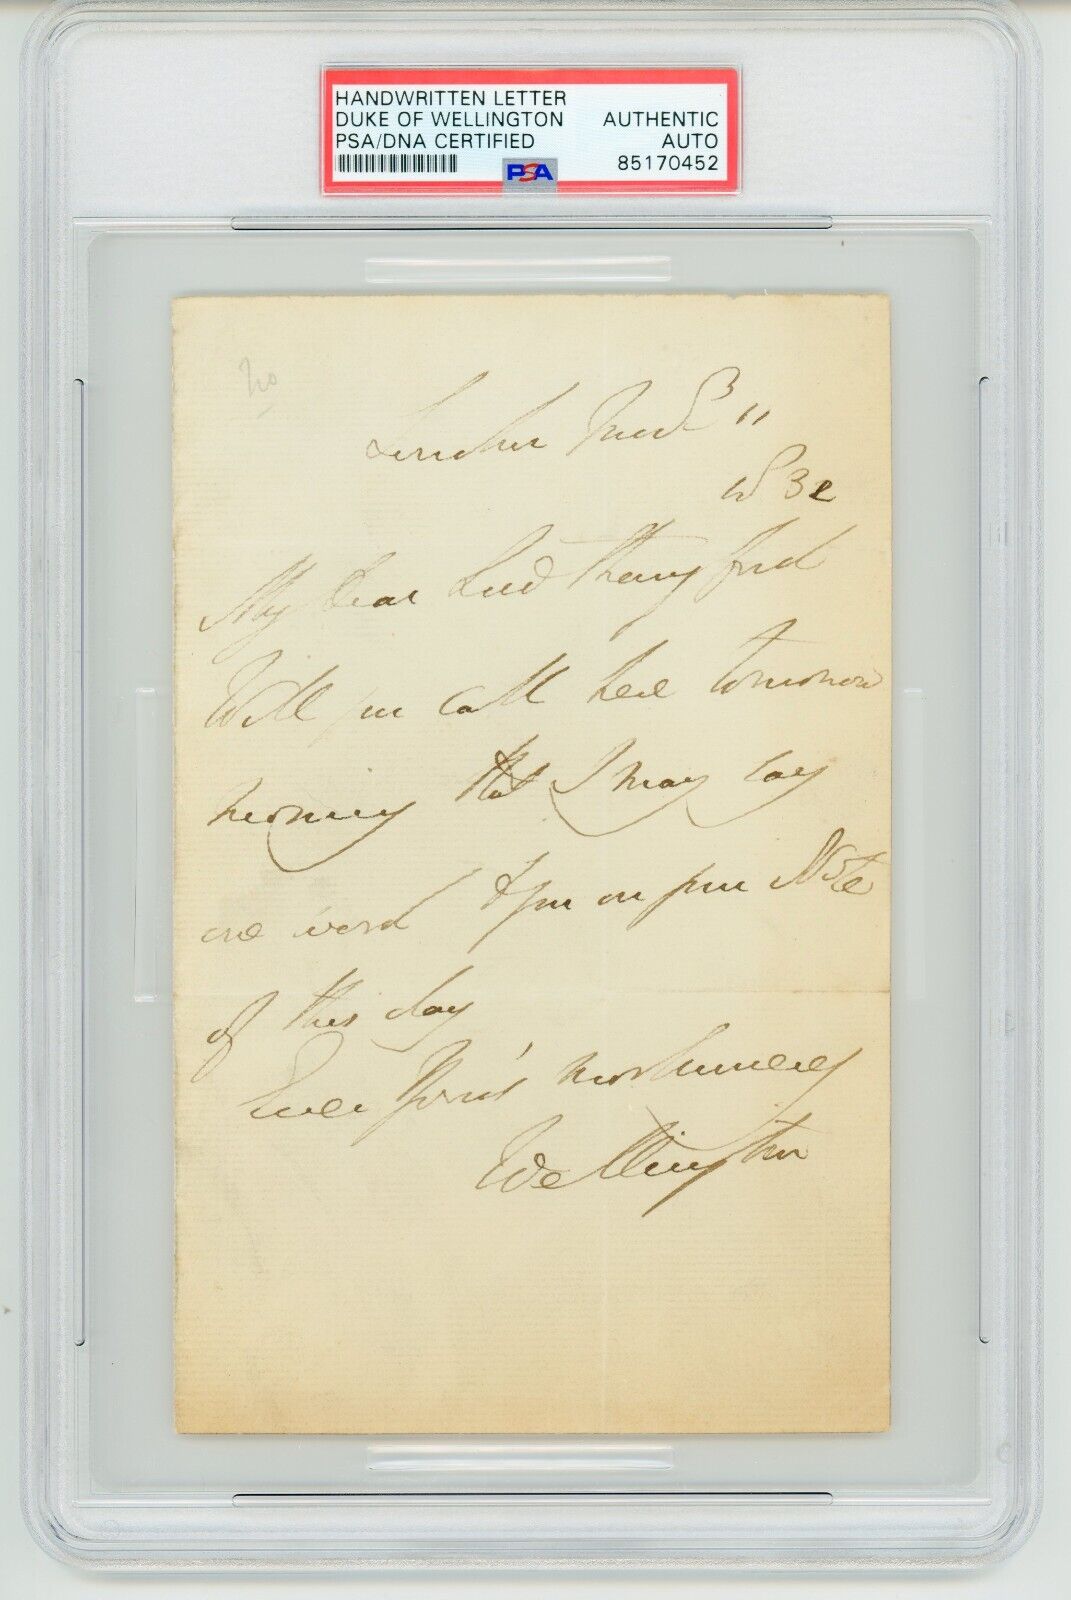 Duke of Wellington (Arthur Wellesley) ~ Signed & Handwritten Letter ~ PSA DNA